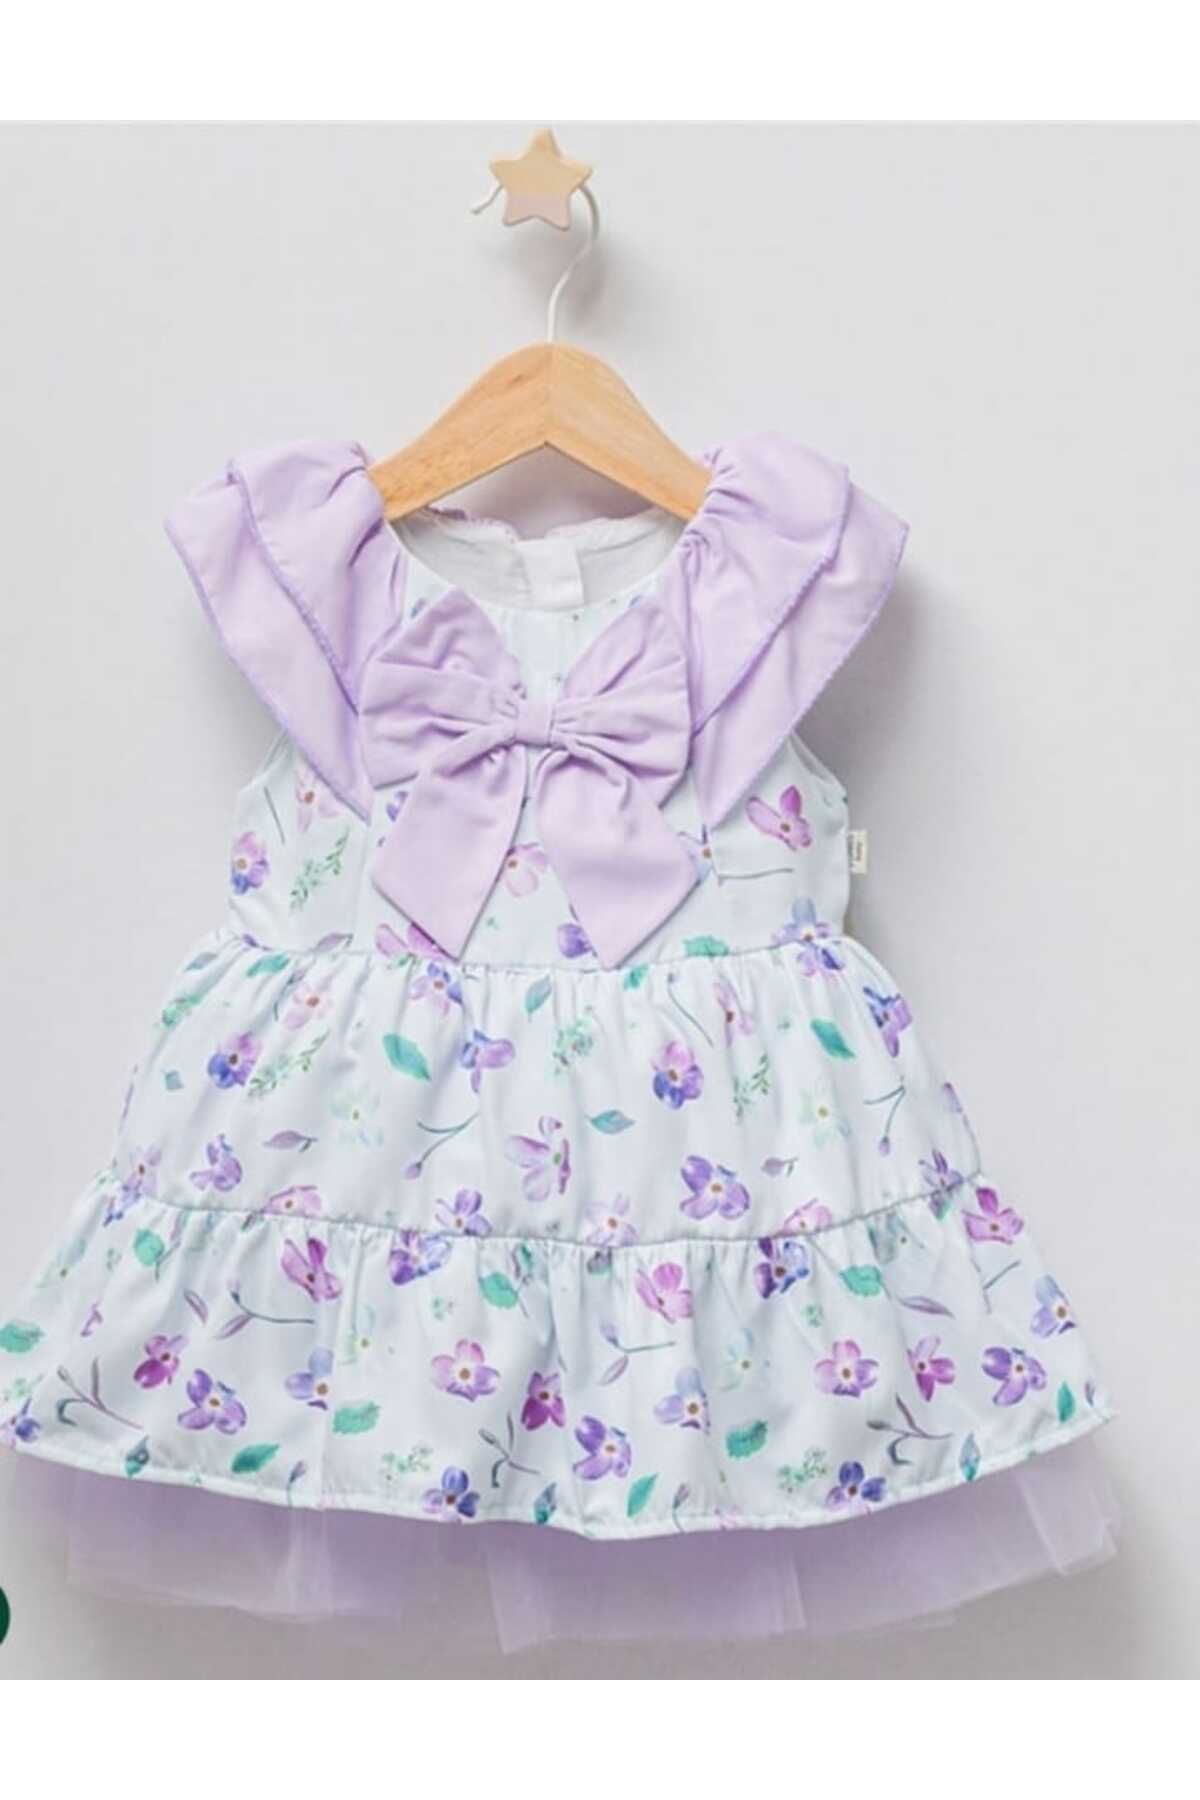 Esterella kız bebek çiçekli tüllü elbise/ fiyonk detaylı /büzgülü viskon kız bebek elbise